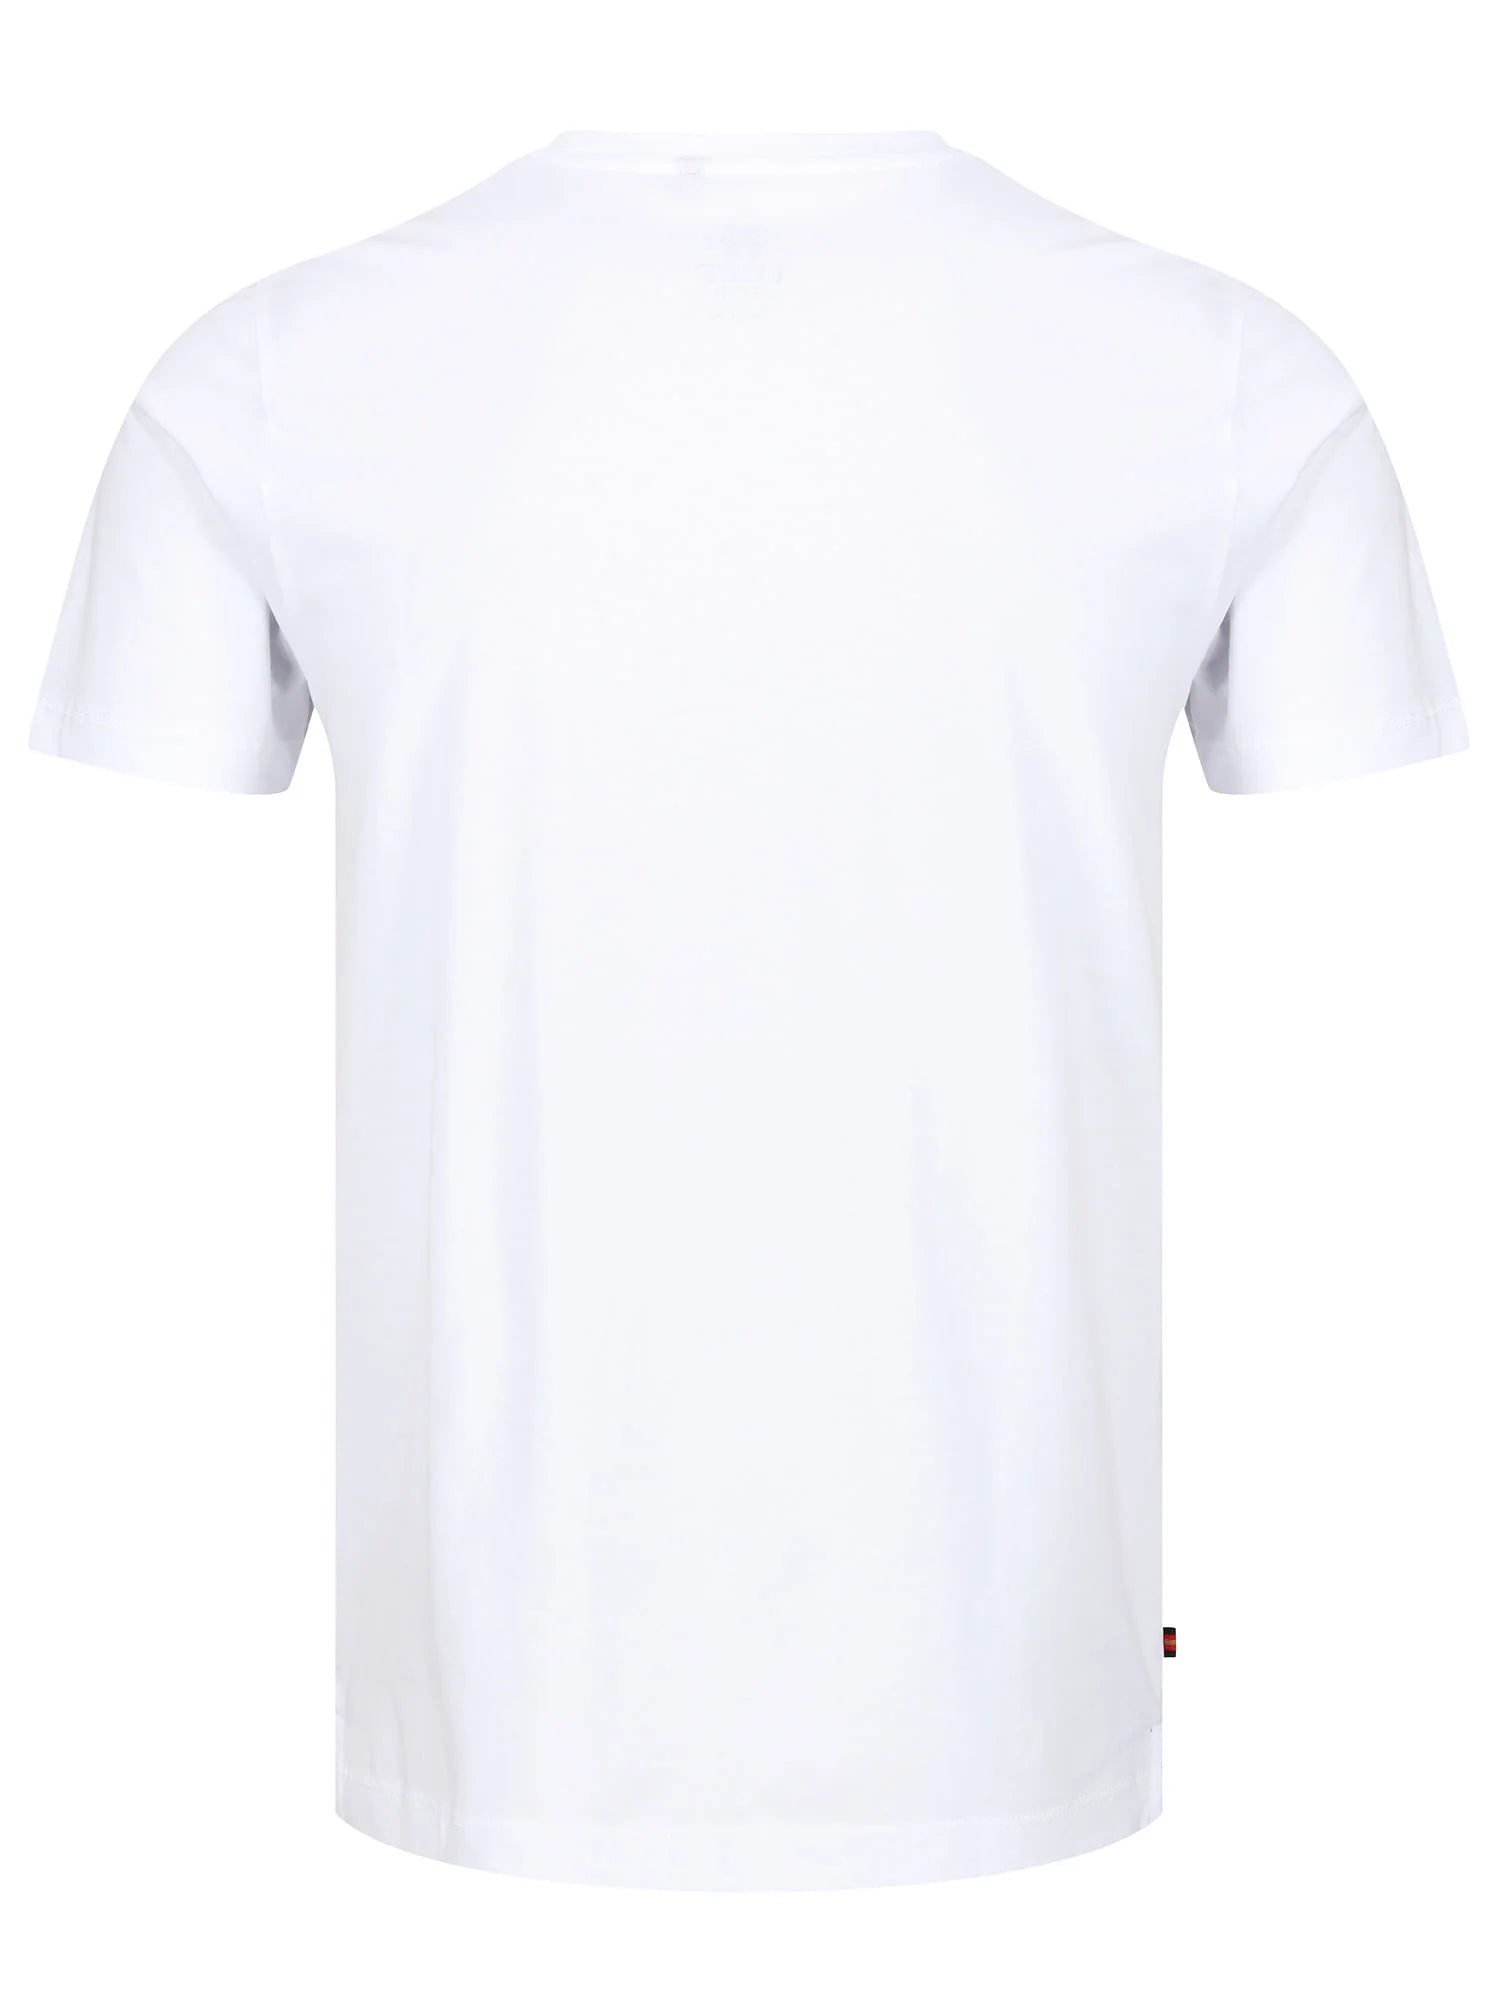 Luke Lions Den T-Shirt White/Sky Blue